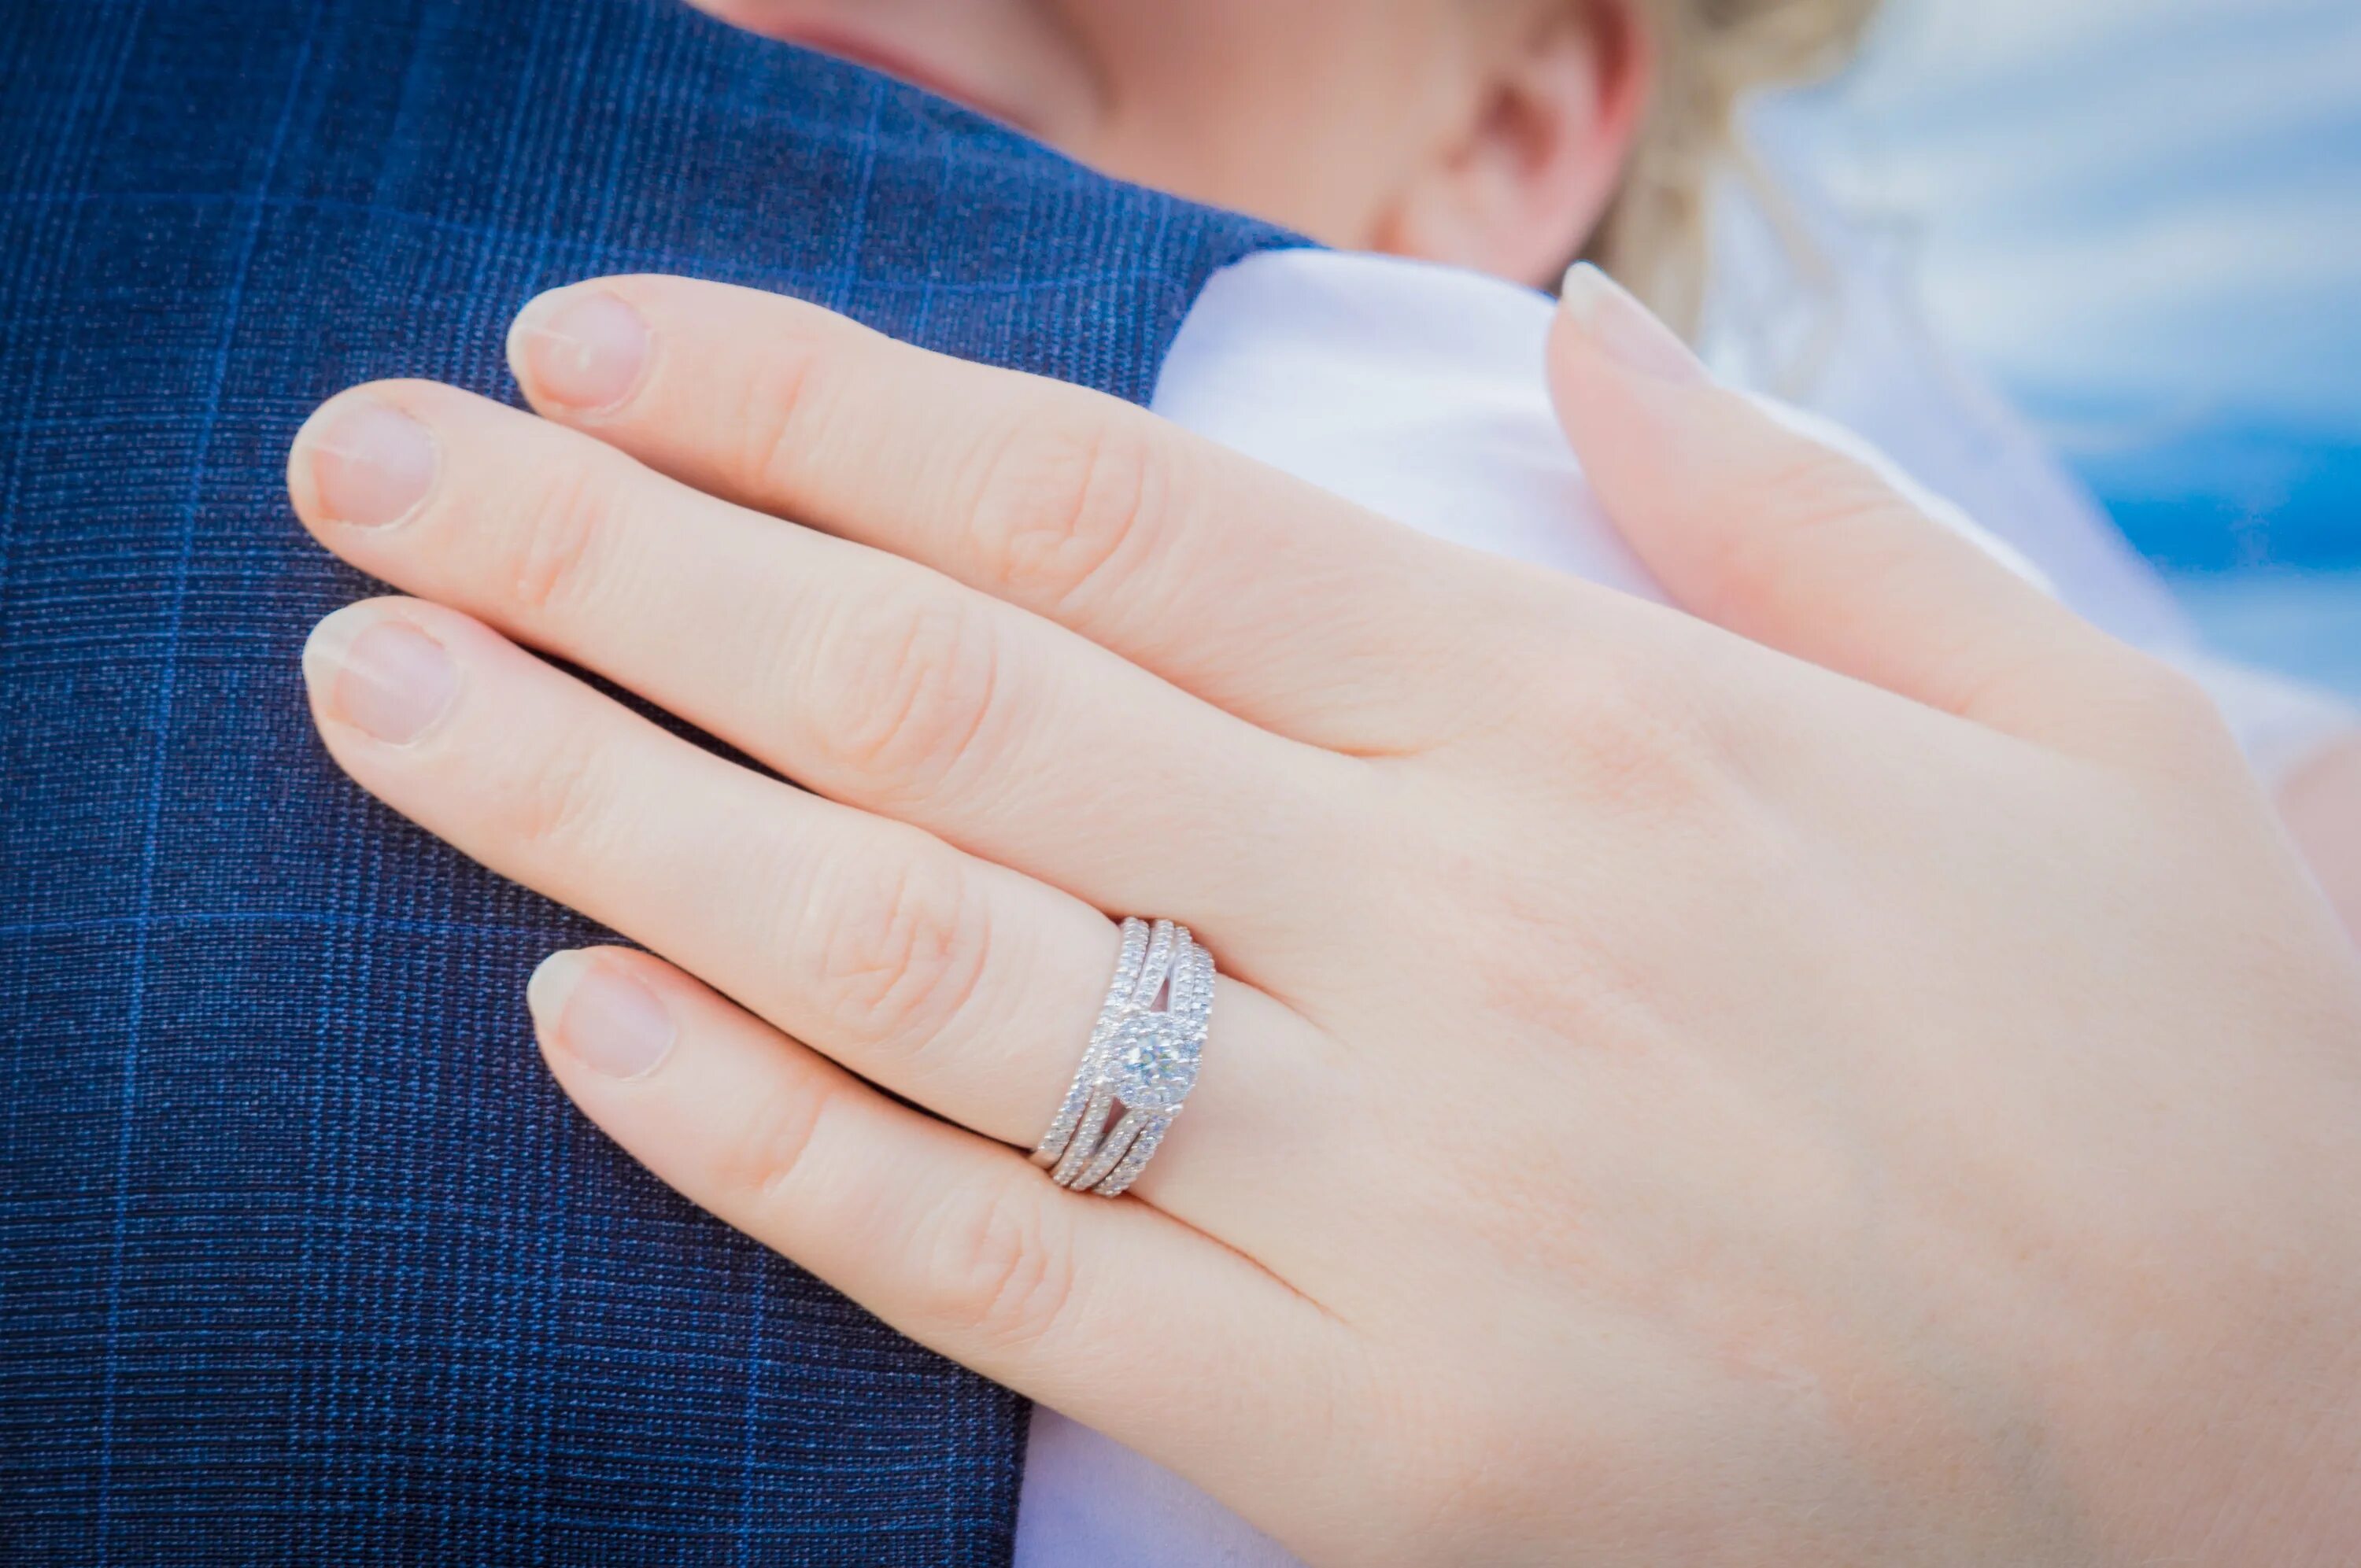 Обручальное и помолвочное кольцо. Обручальное кольцо на пальце. Помолвочные кольца на руке. Помолвочное и обручальное кольцо комплект. Сон одели кольцо золотое кольцо